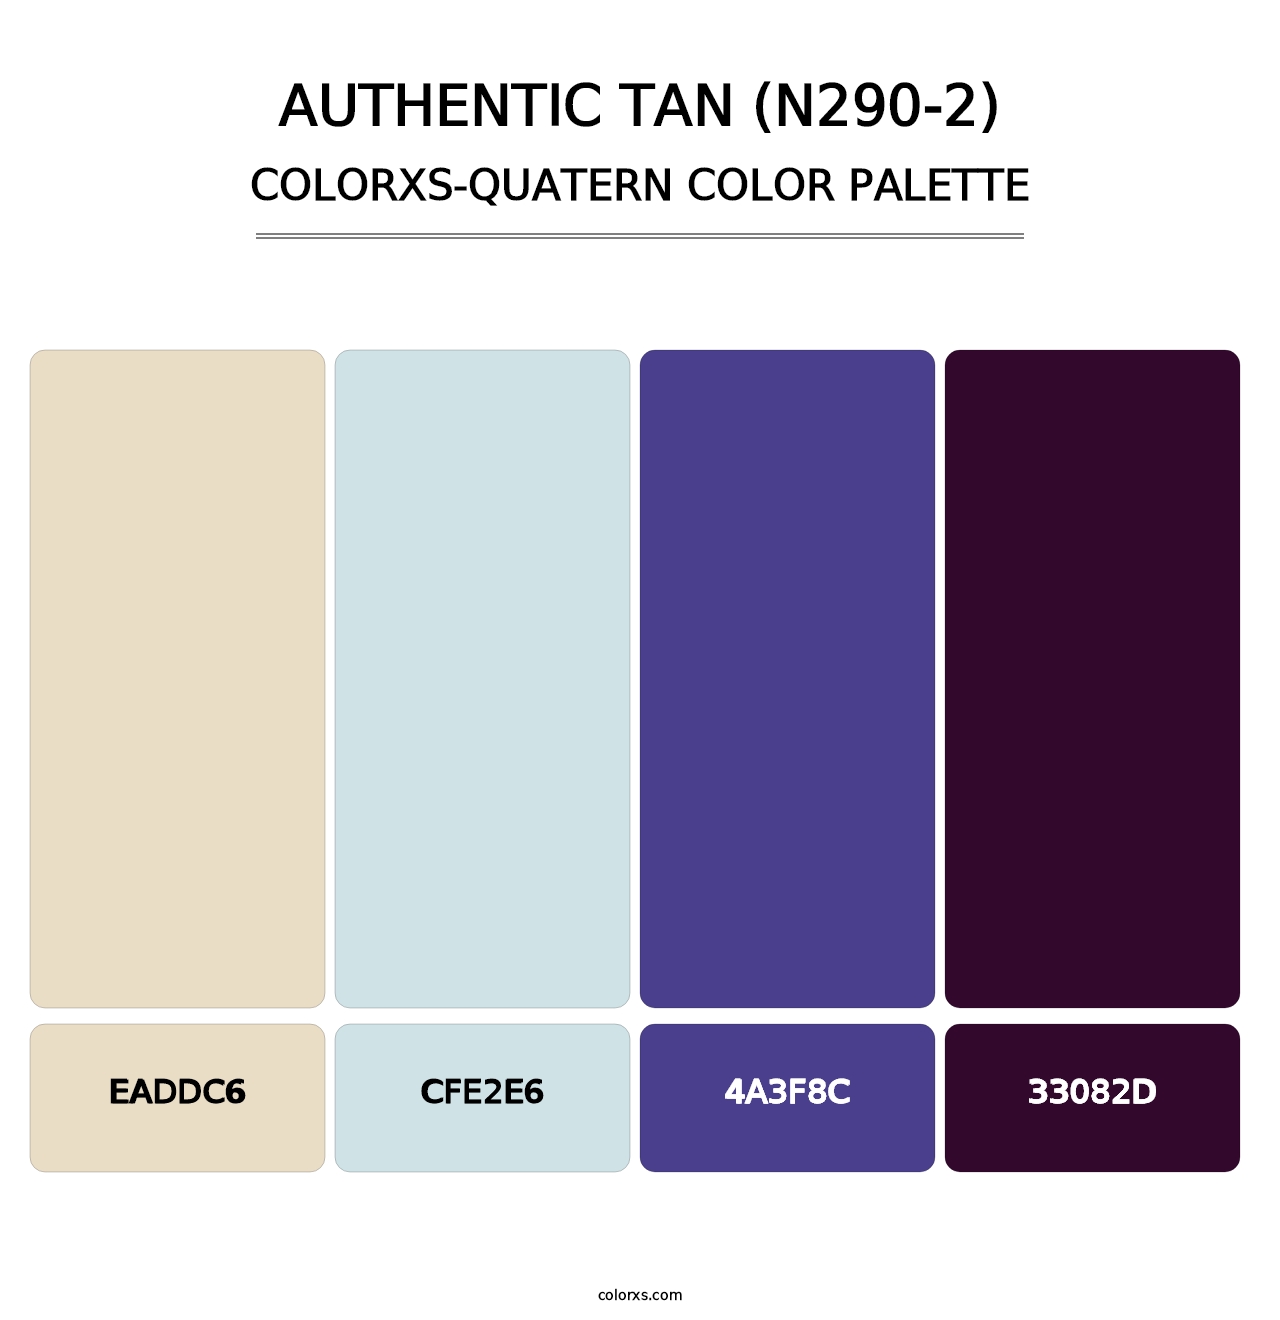 Authentic Tan (N290-2) - Colorxs Quatern Palette